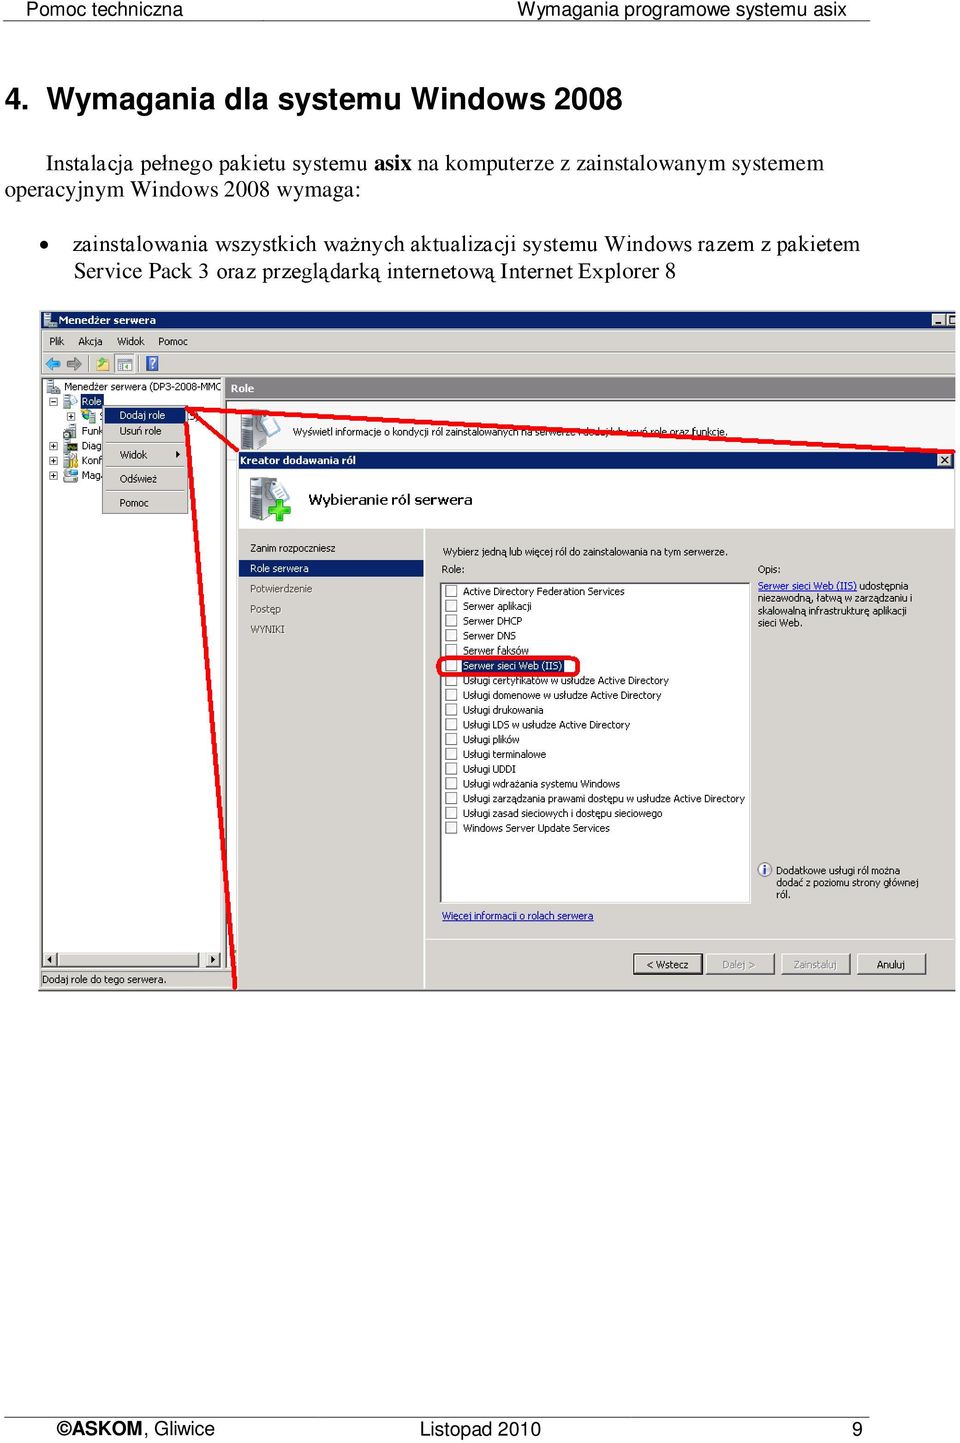 zainstalowanym systemem operacyjnym Windows 2008 wymaga: zainstalowania wszystkich ważnych